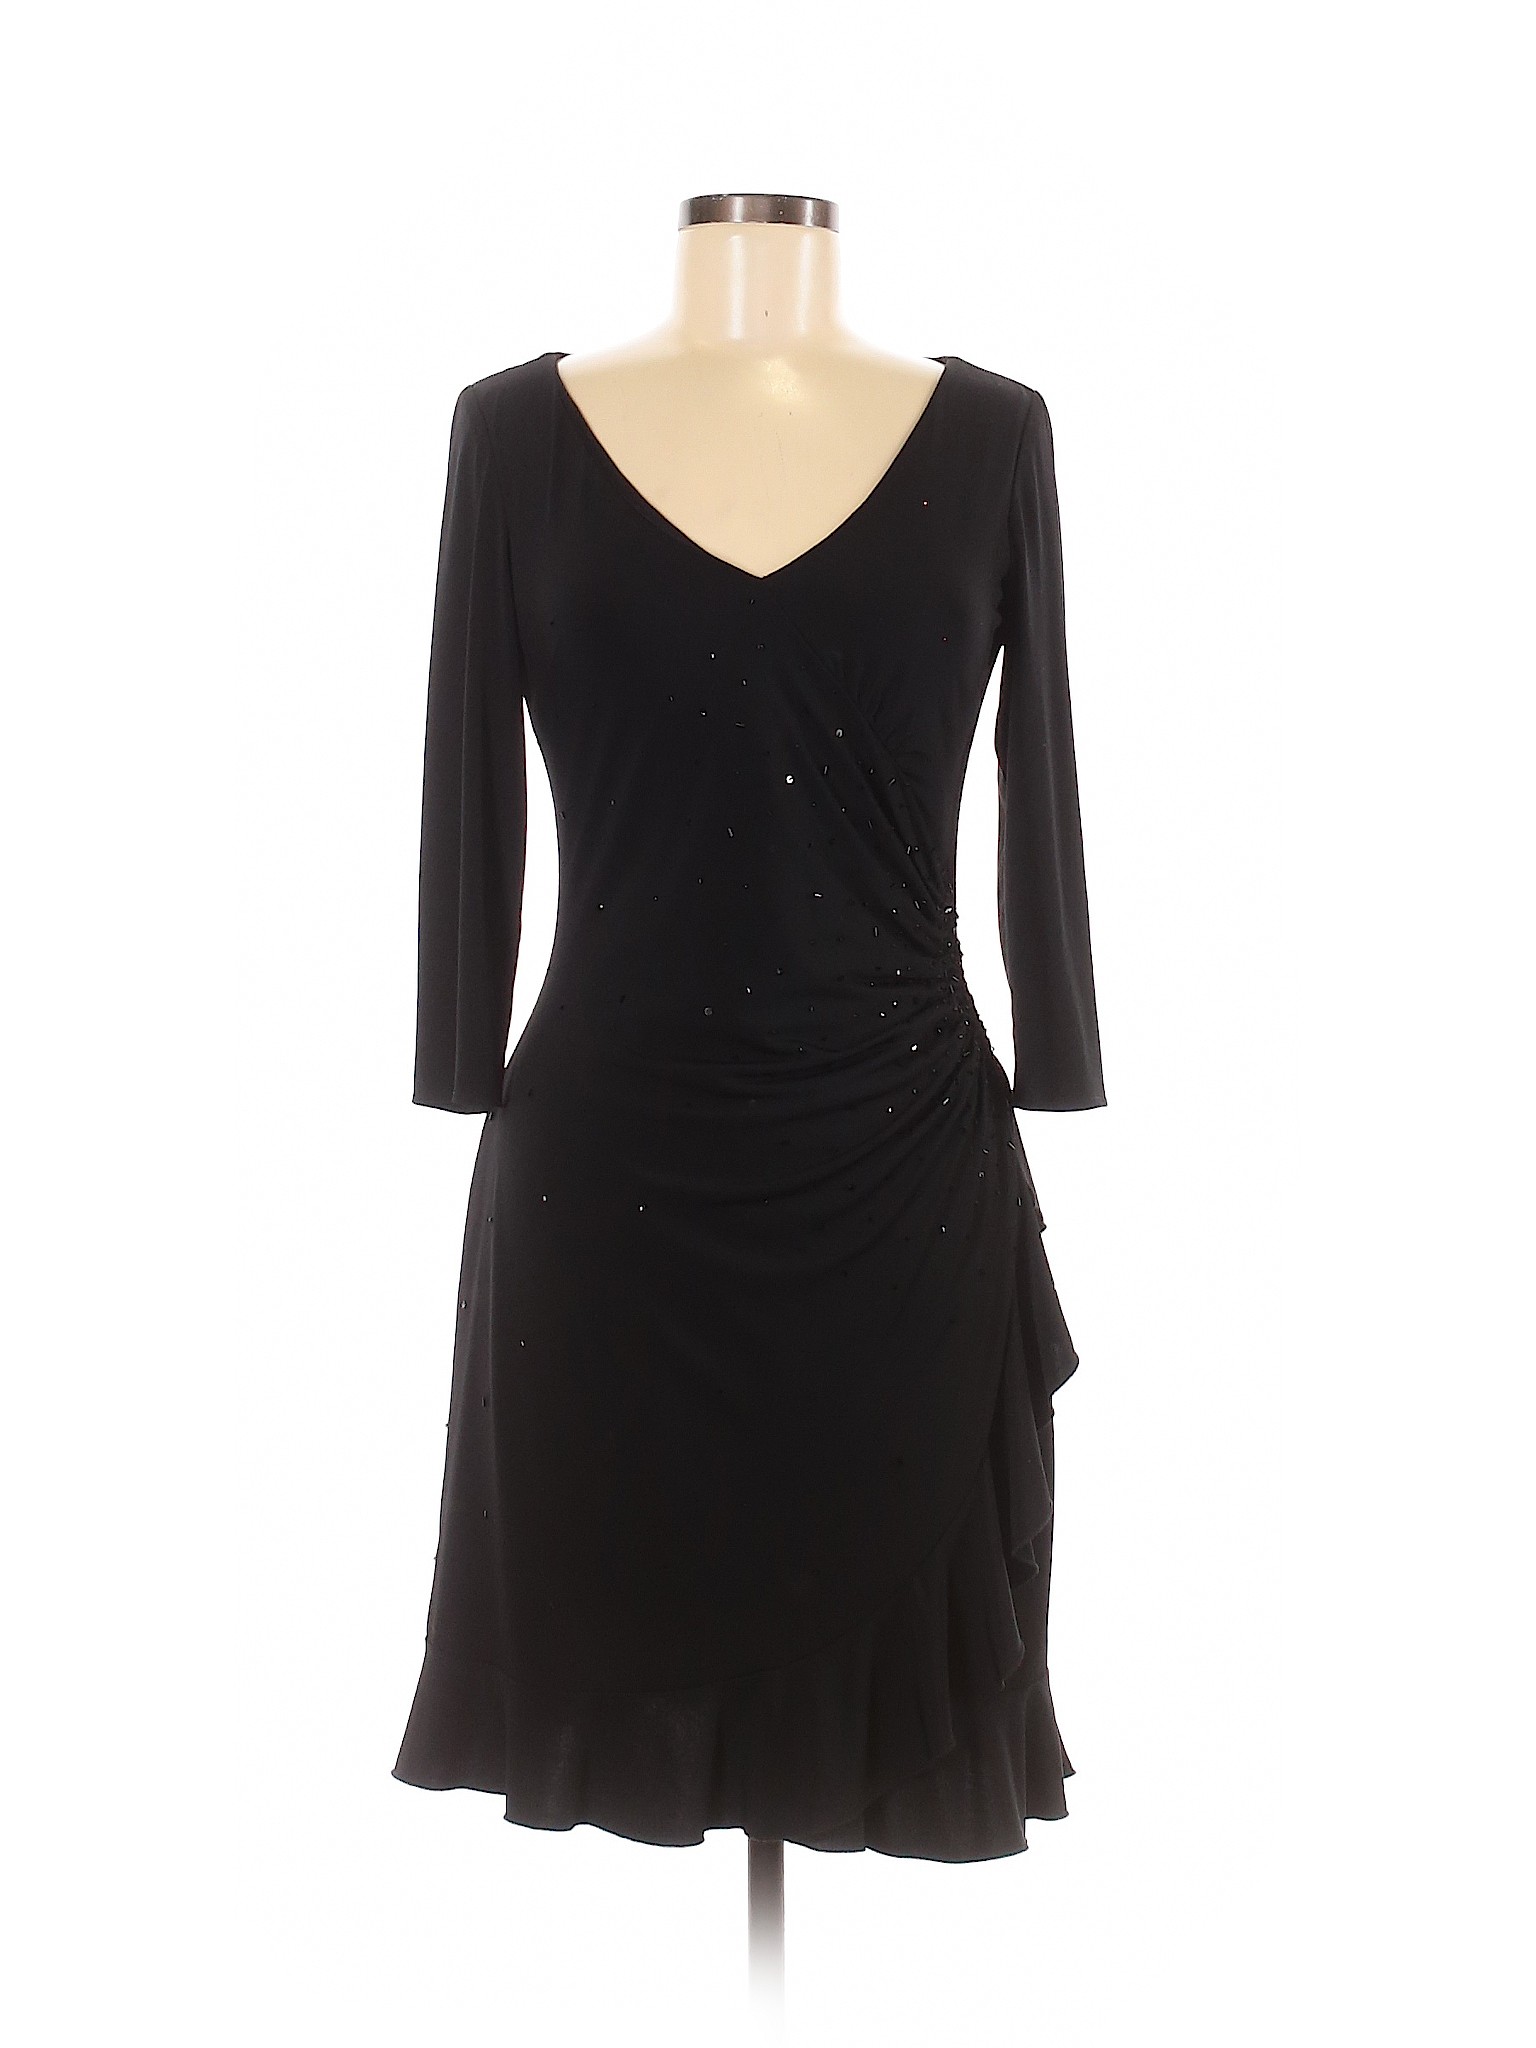 JS Boutique Women Black Cocktail Dress 8 Petites | eBay